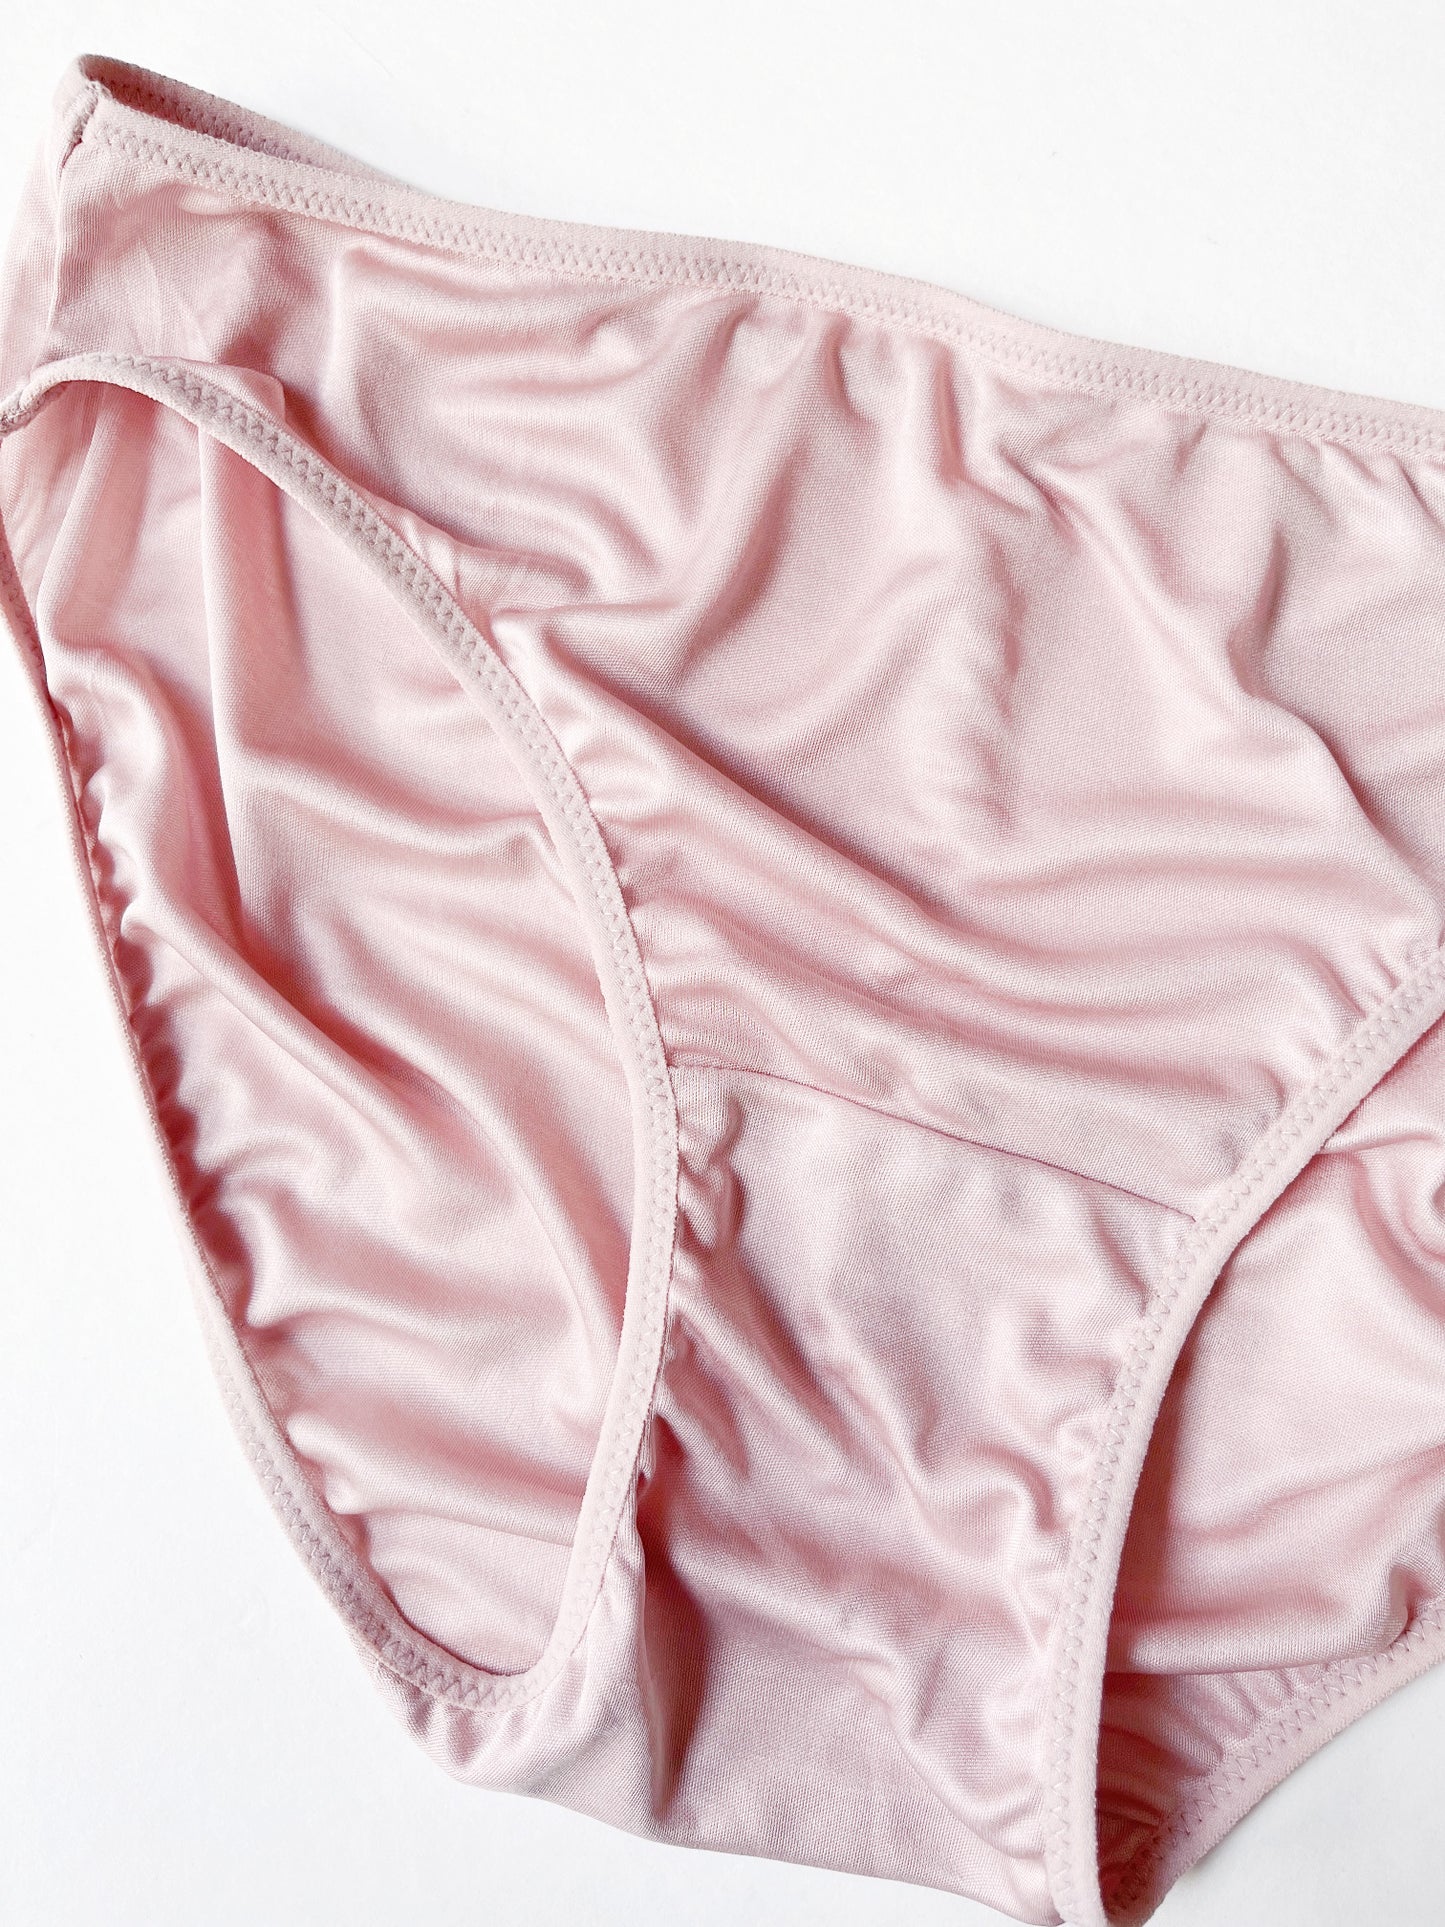 Women Ladies Panties Lingerie Soft Silk Satin Underwear Knickers Briefs  M-3XL - Conseil scolaire francophone de Terre-Neuve et Labrador